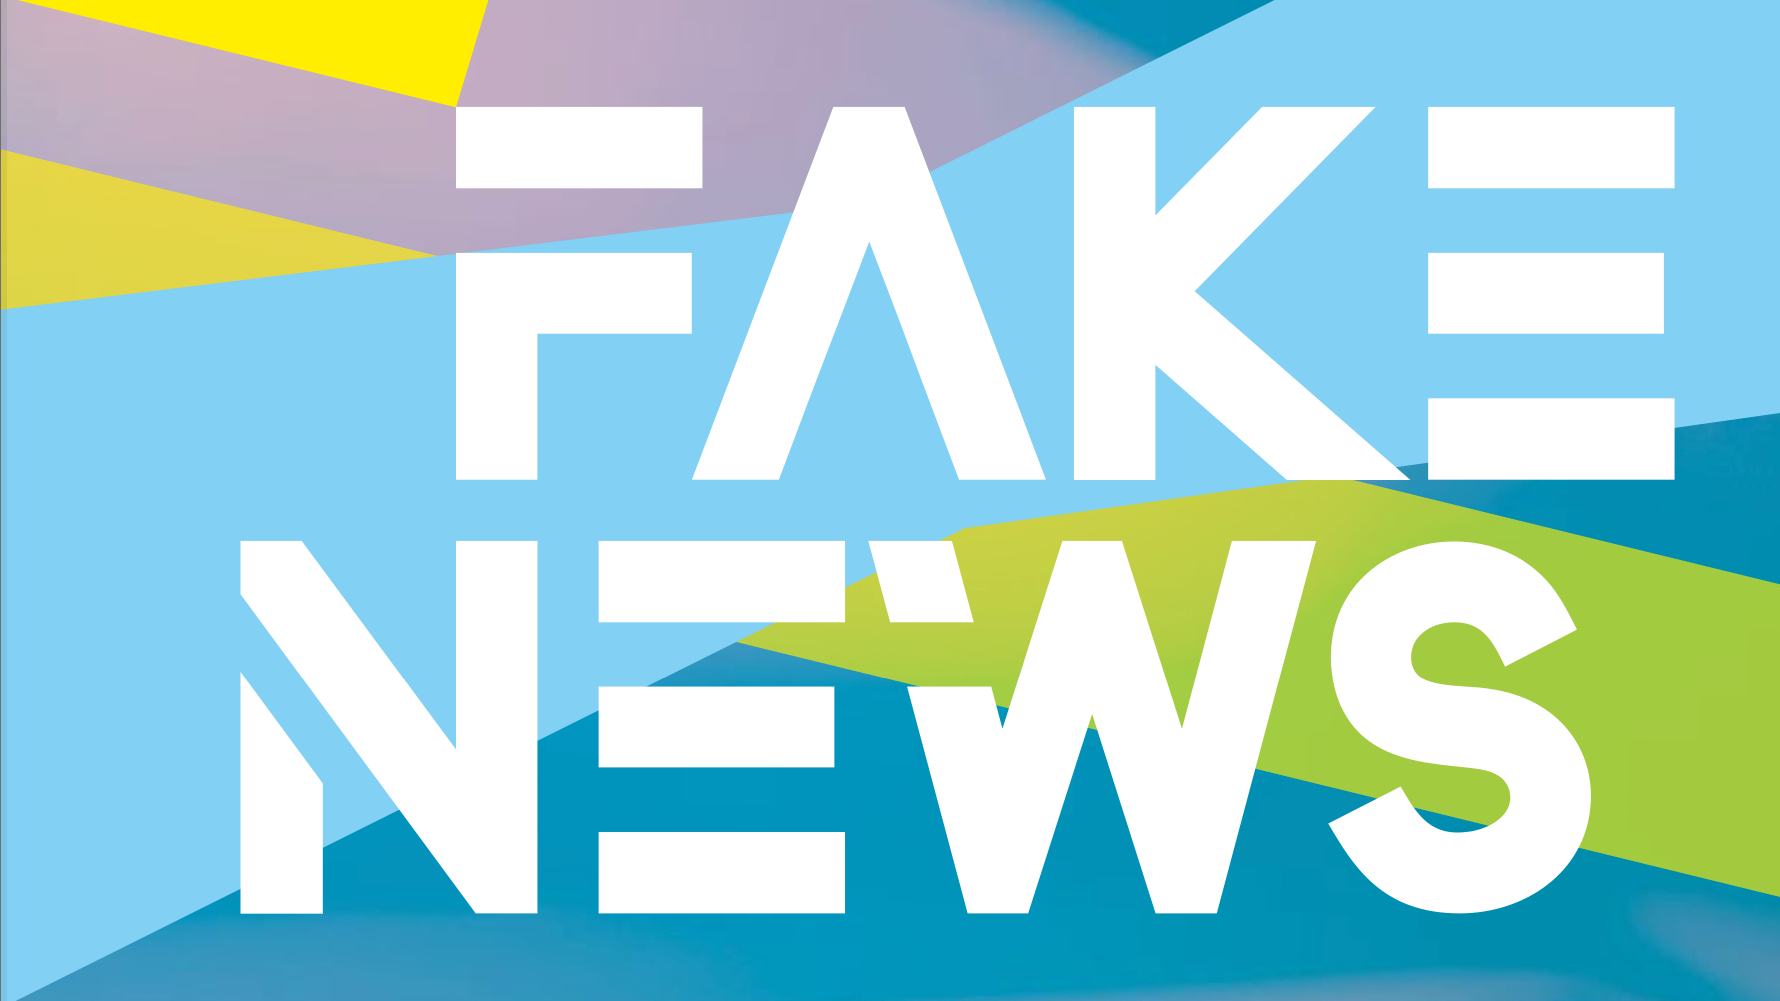 Auf abstrakten geometrischen Farbflächen der Schriftzug "Fake News"